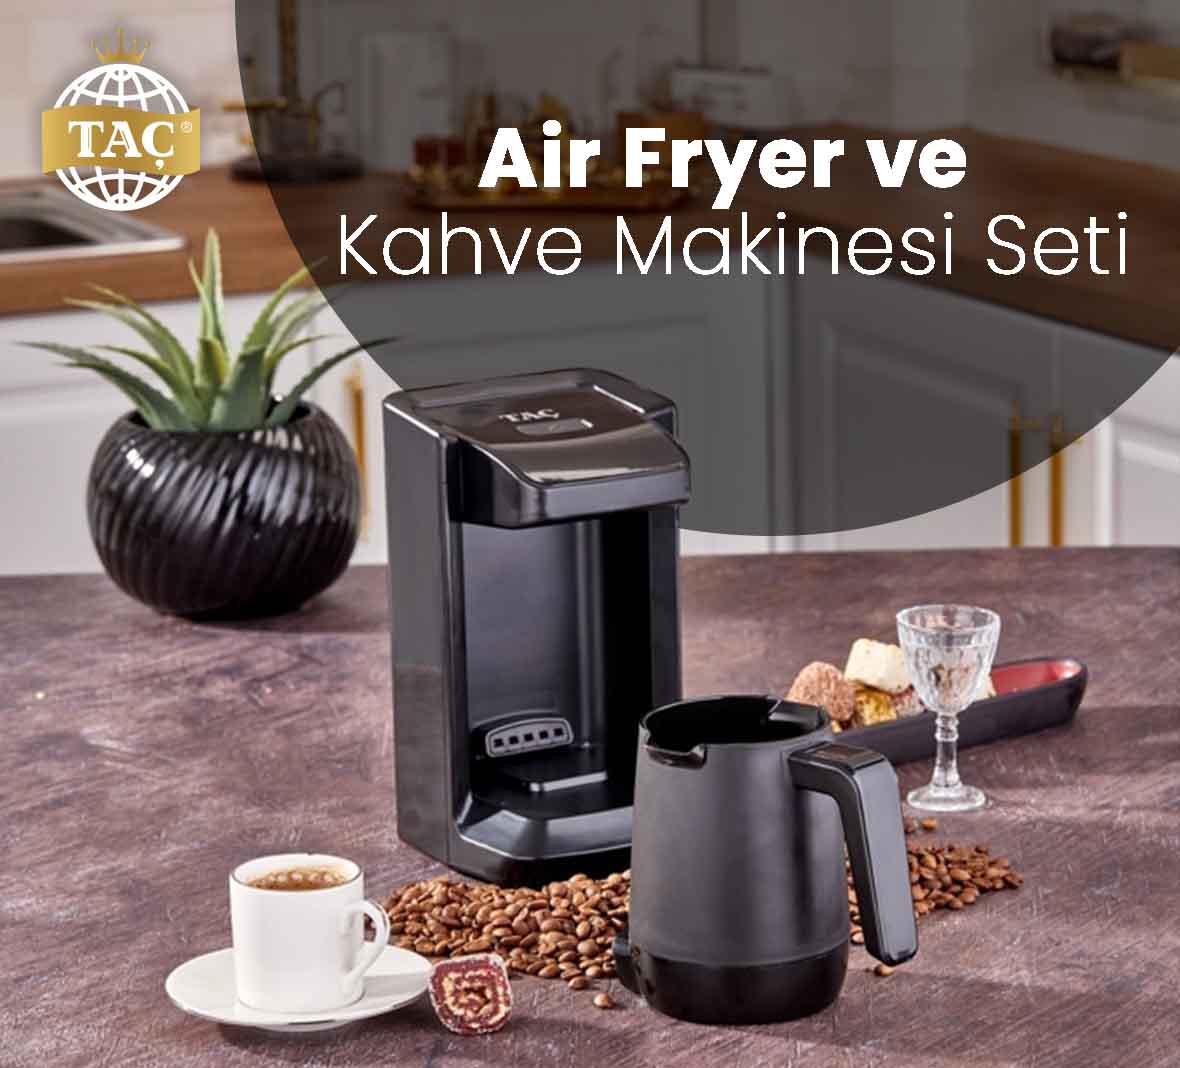 Air Fryer ve Kahve Makinesi Çeyiz Setleri mutfak eşyaları için iletişime geçin.  - Taç